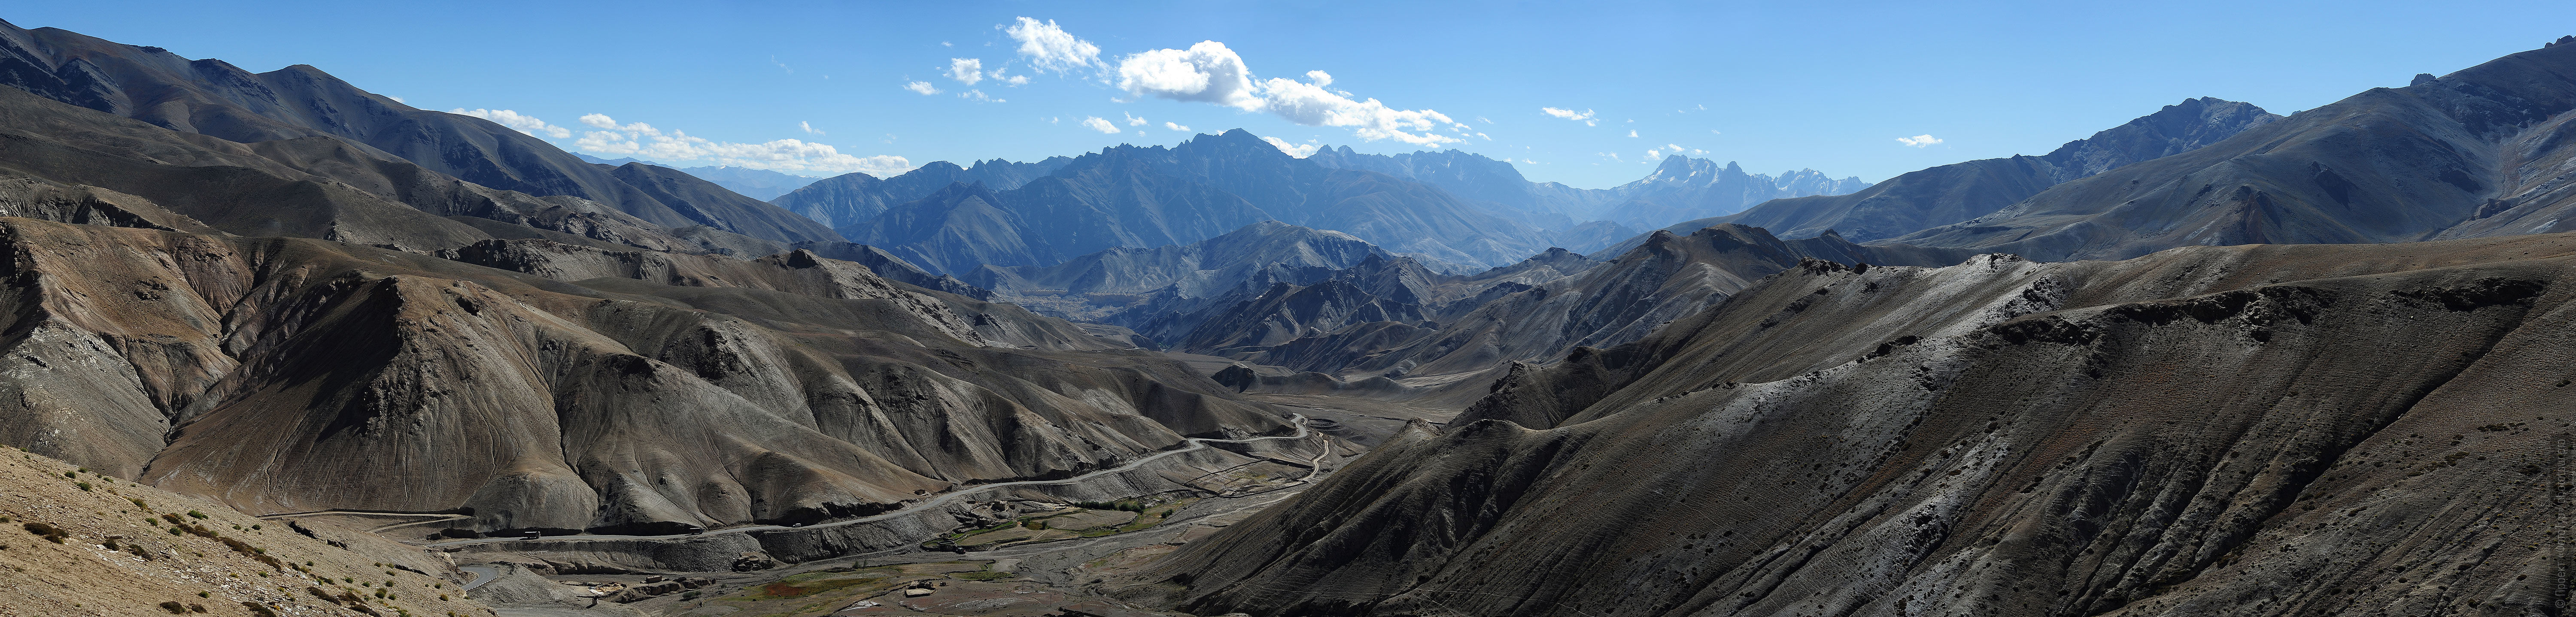 Вид на долину Ламаюру с перевала Фоту Ла. Тур в Гималаи с русскими гидами.